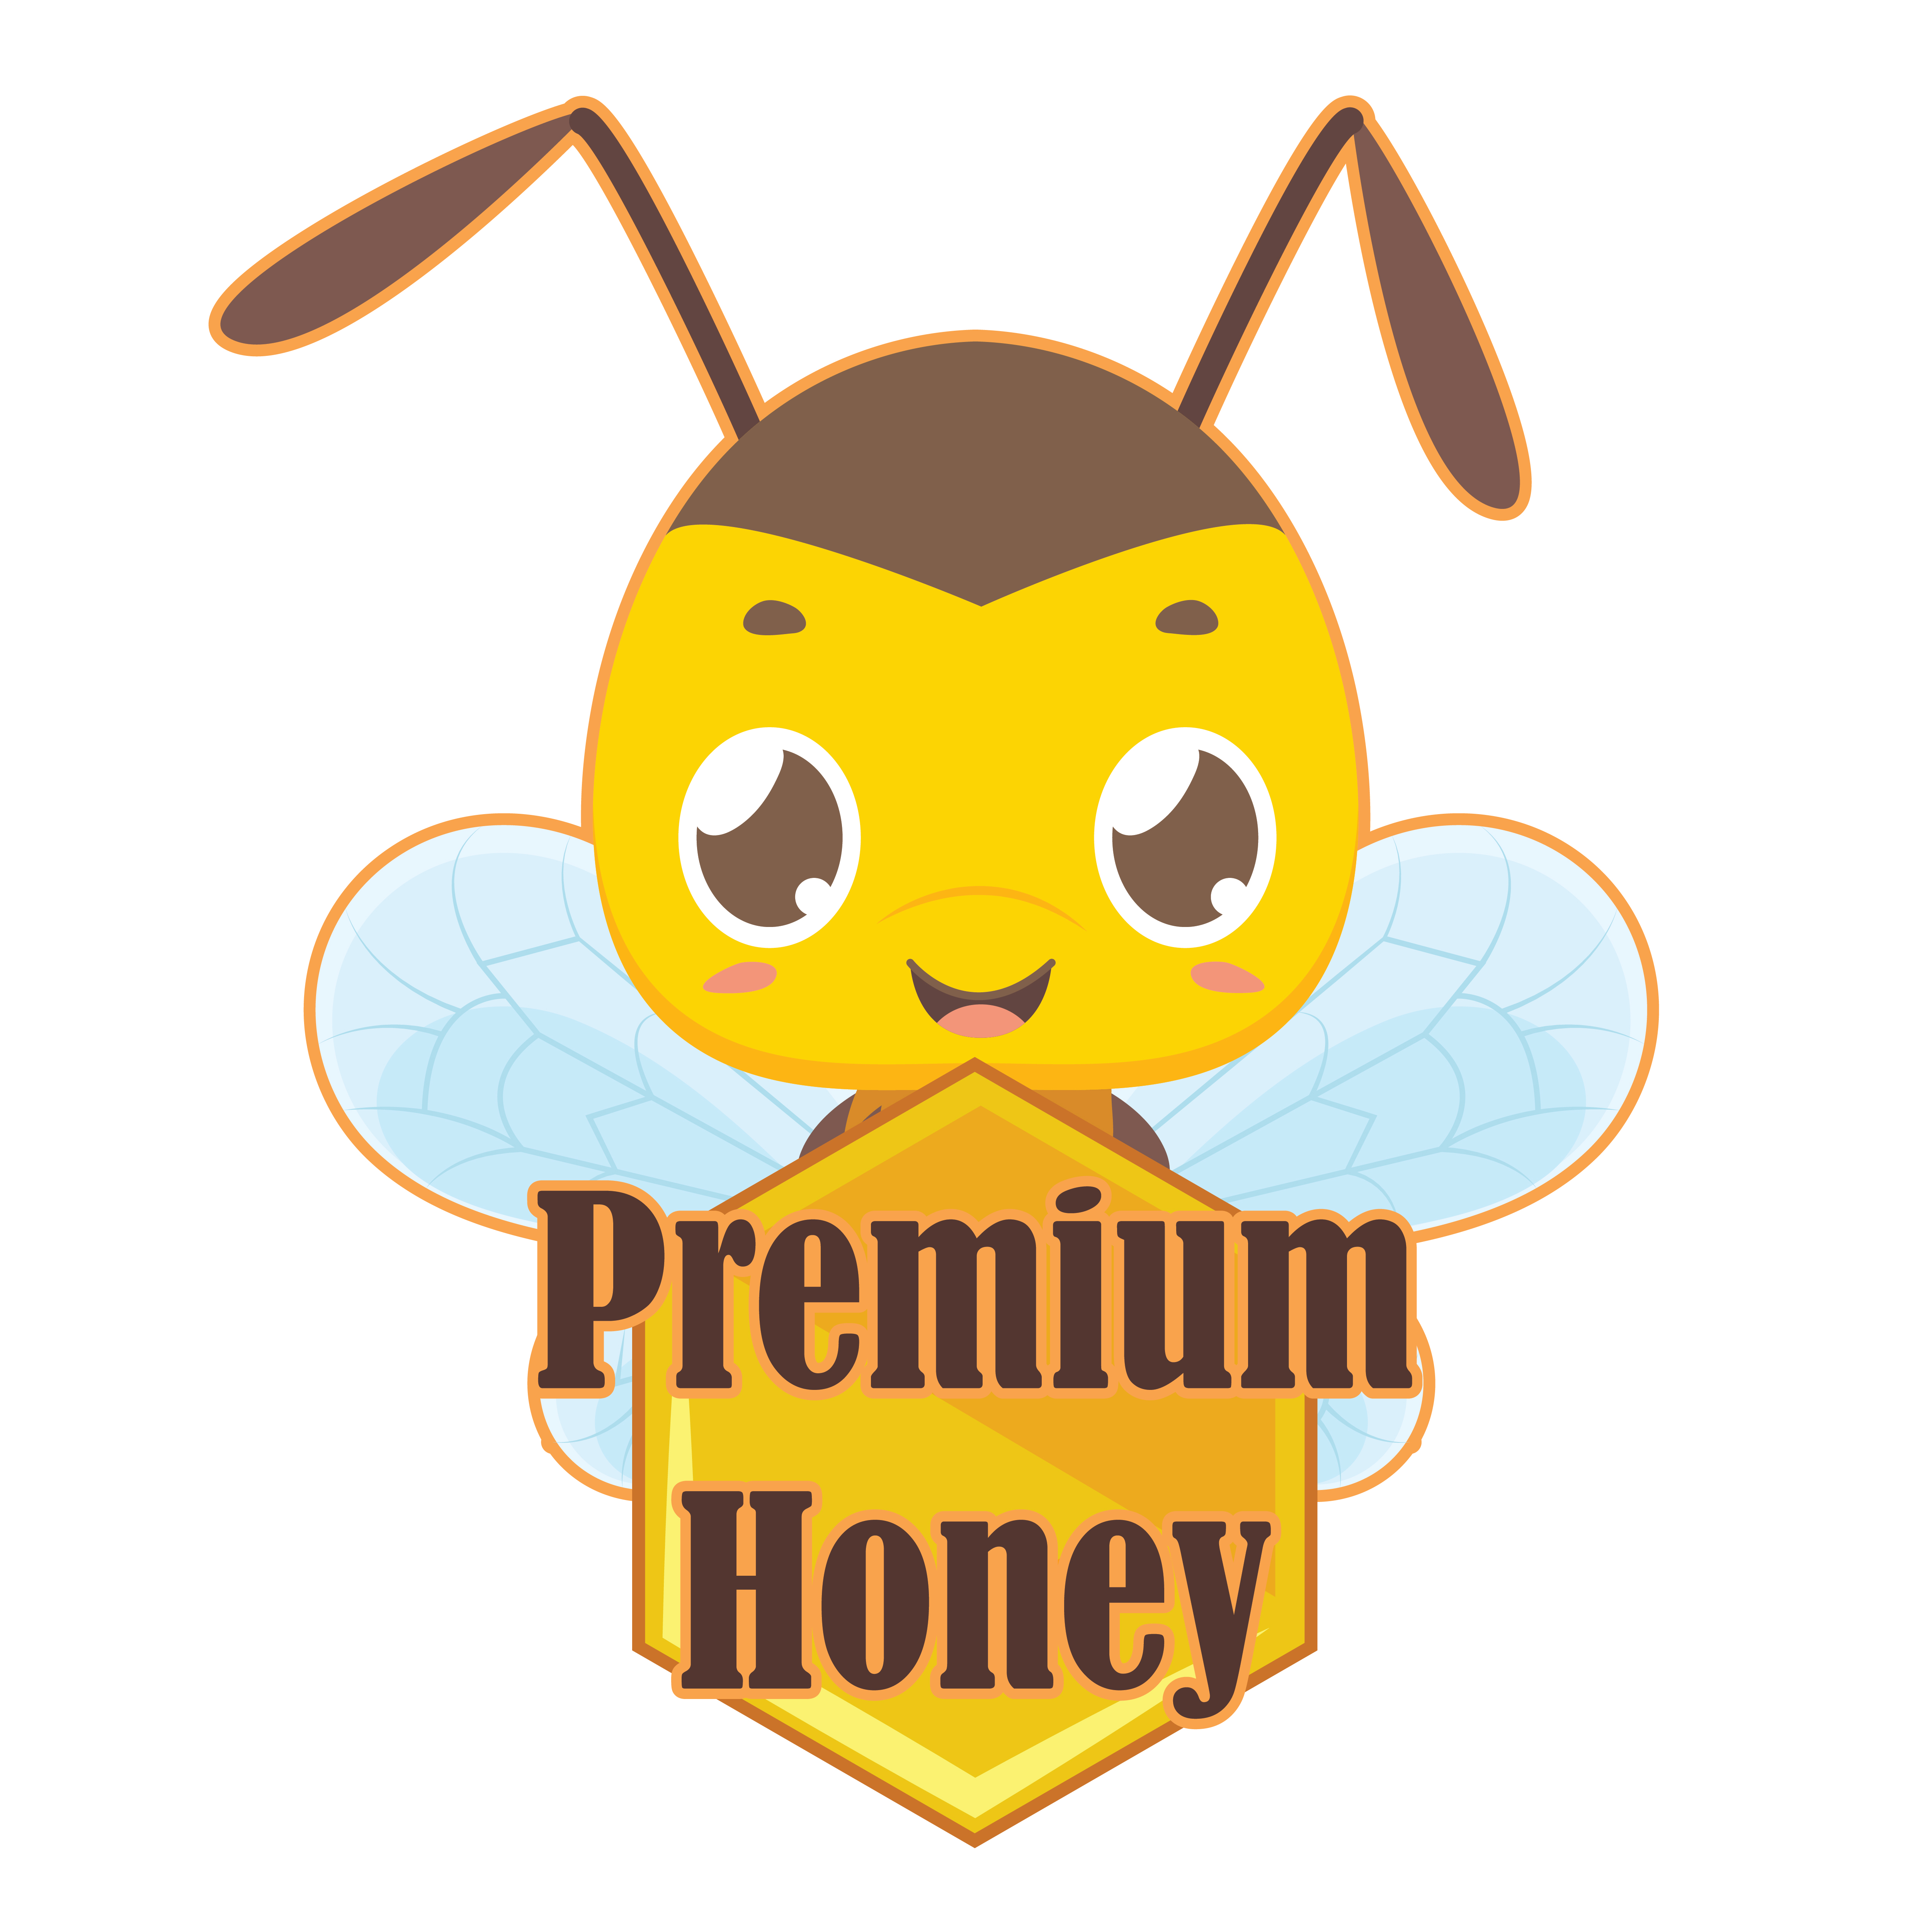 Download Premium honey badge with cute bee - Download Free Vectors ...